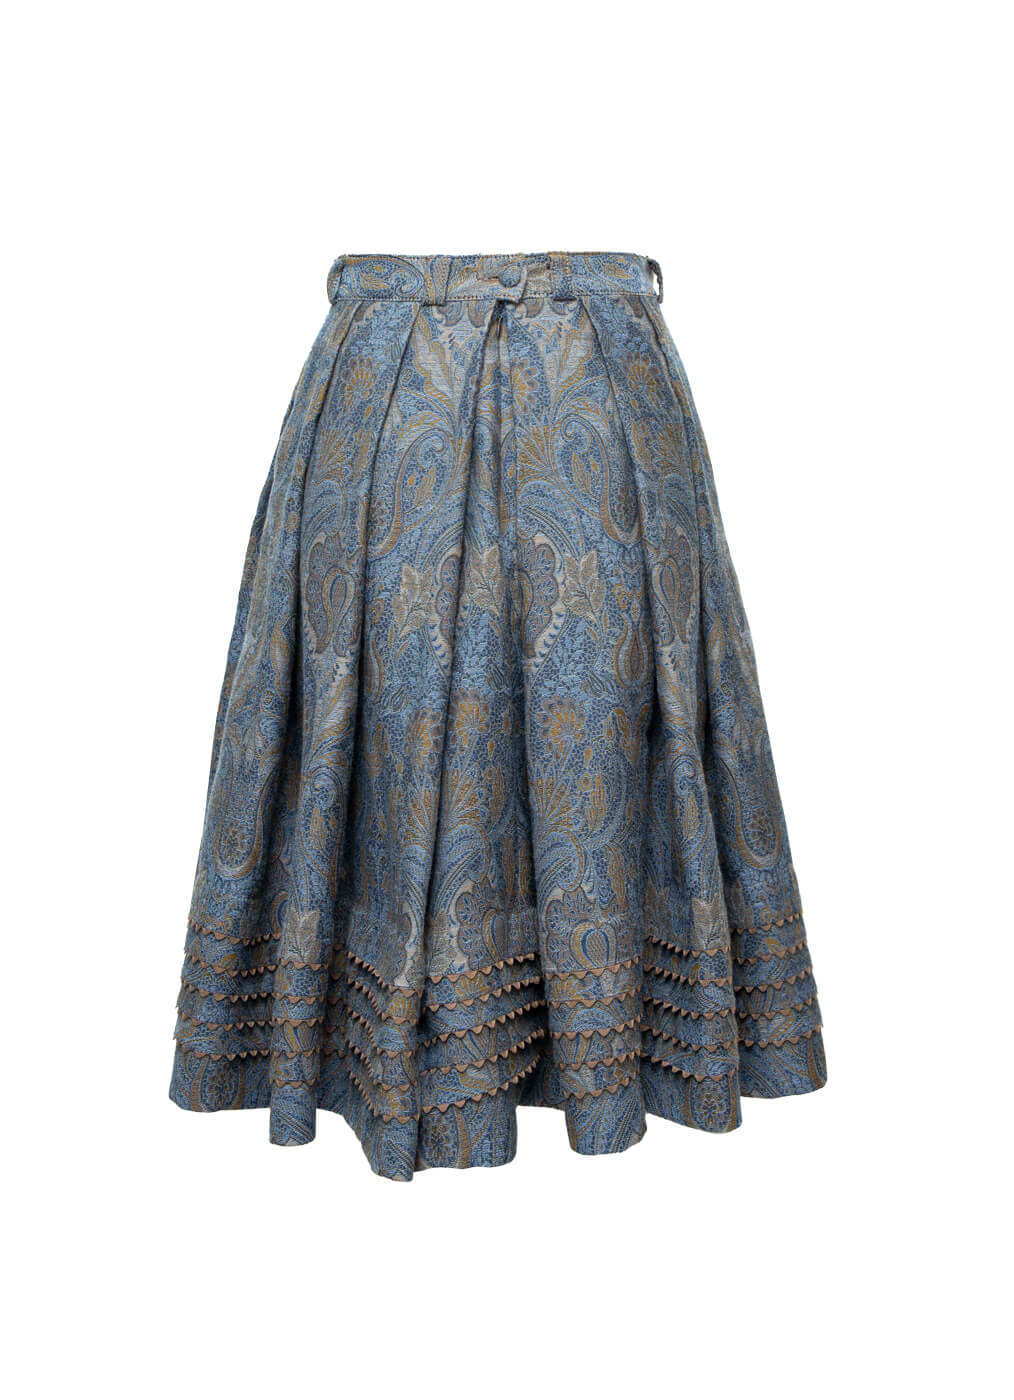 Wool Skirt “Ladies Club”, jeans